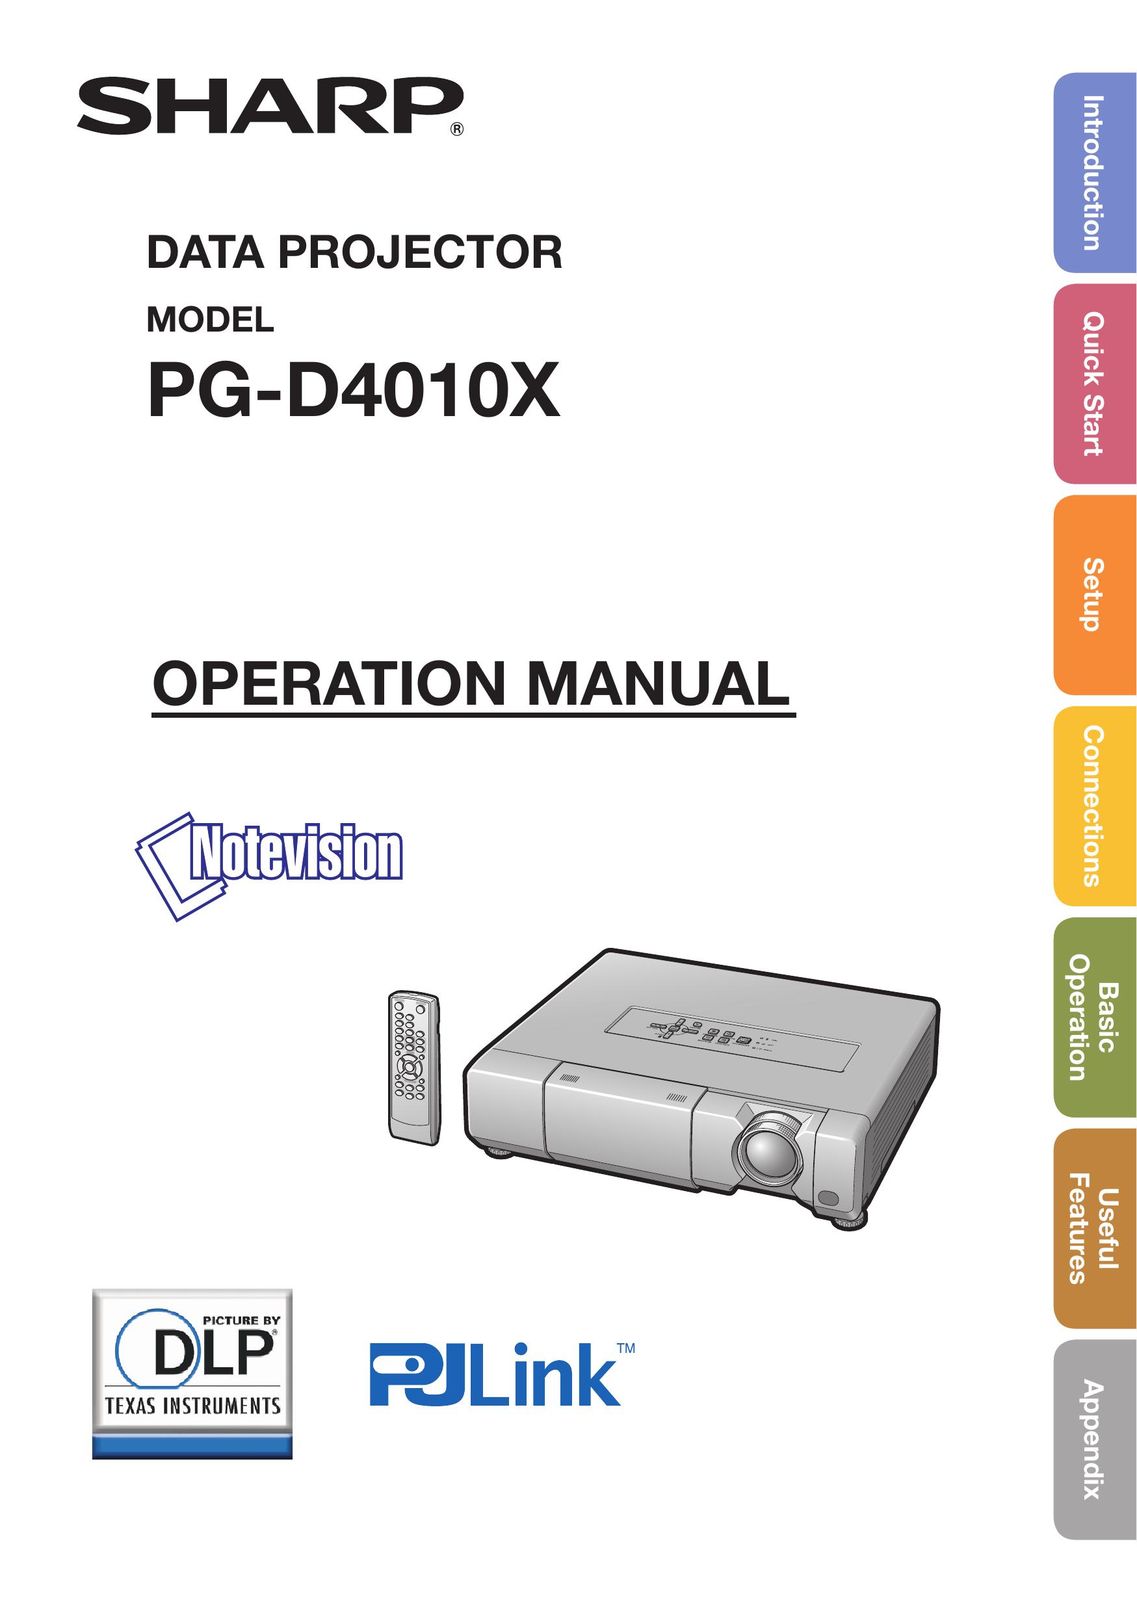 Shark PG-D4010X Projector User Manual